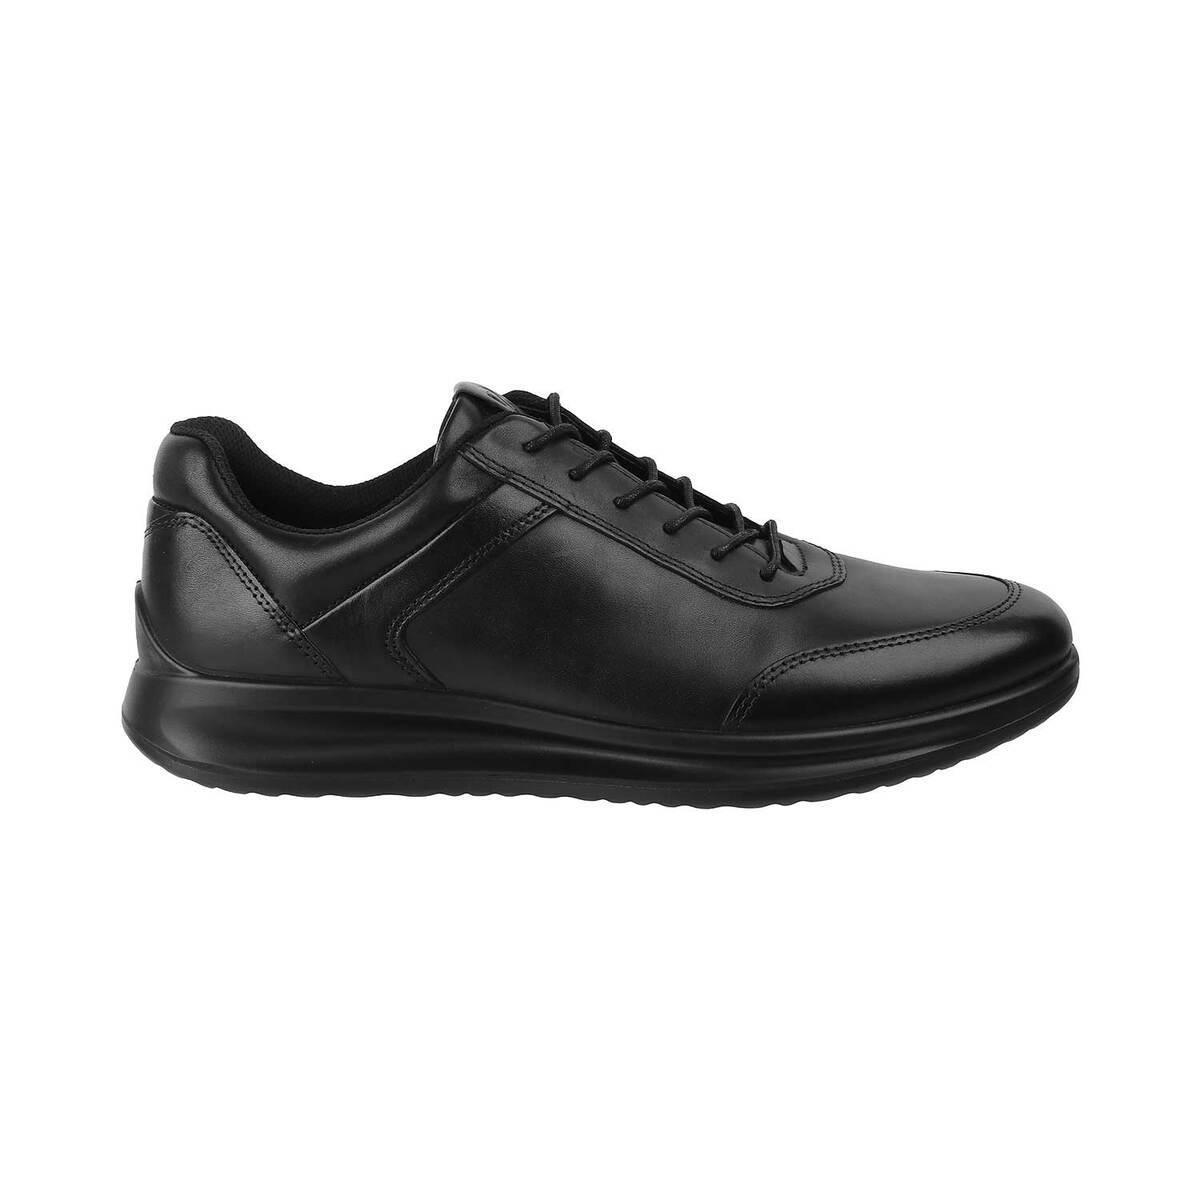 Buy ECCO Male Black Casual Sneakers Online | SKU: 339-207124-11-40 ...